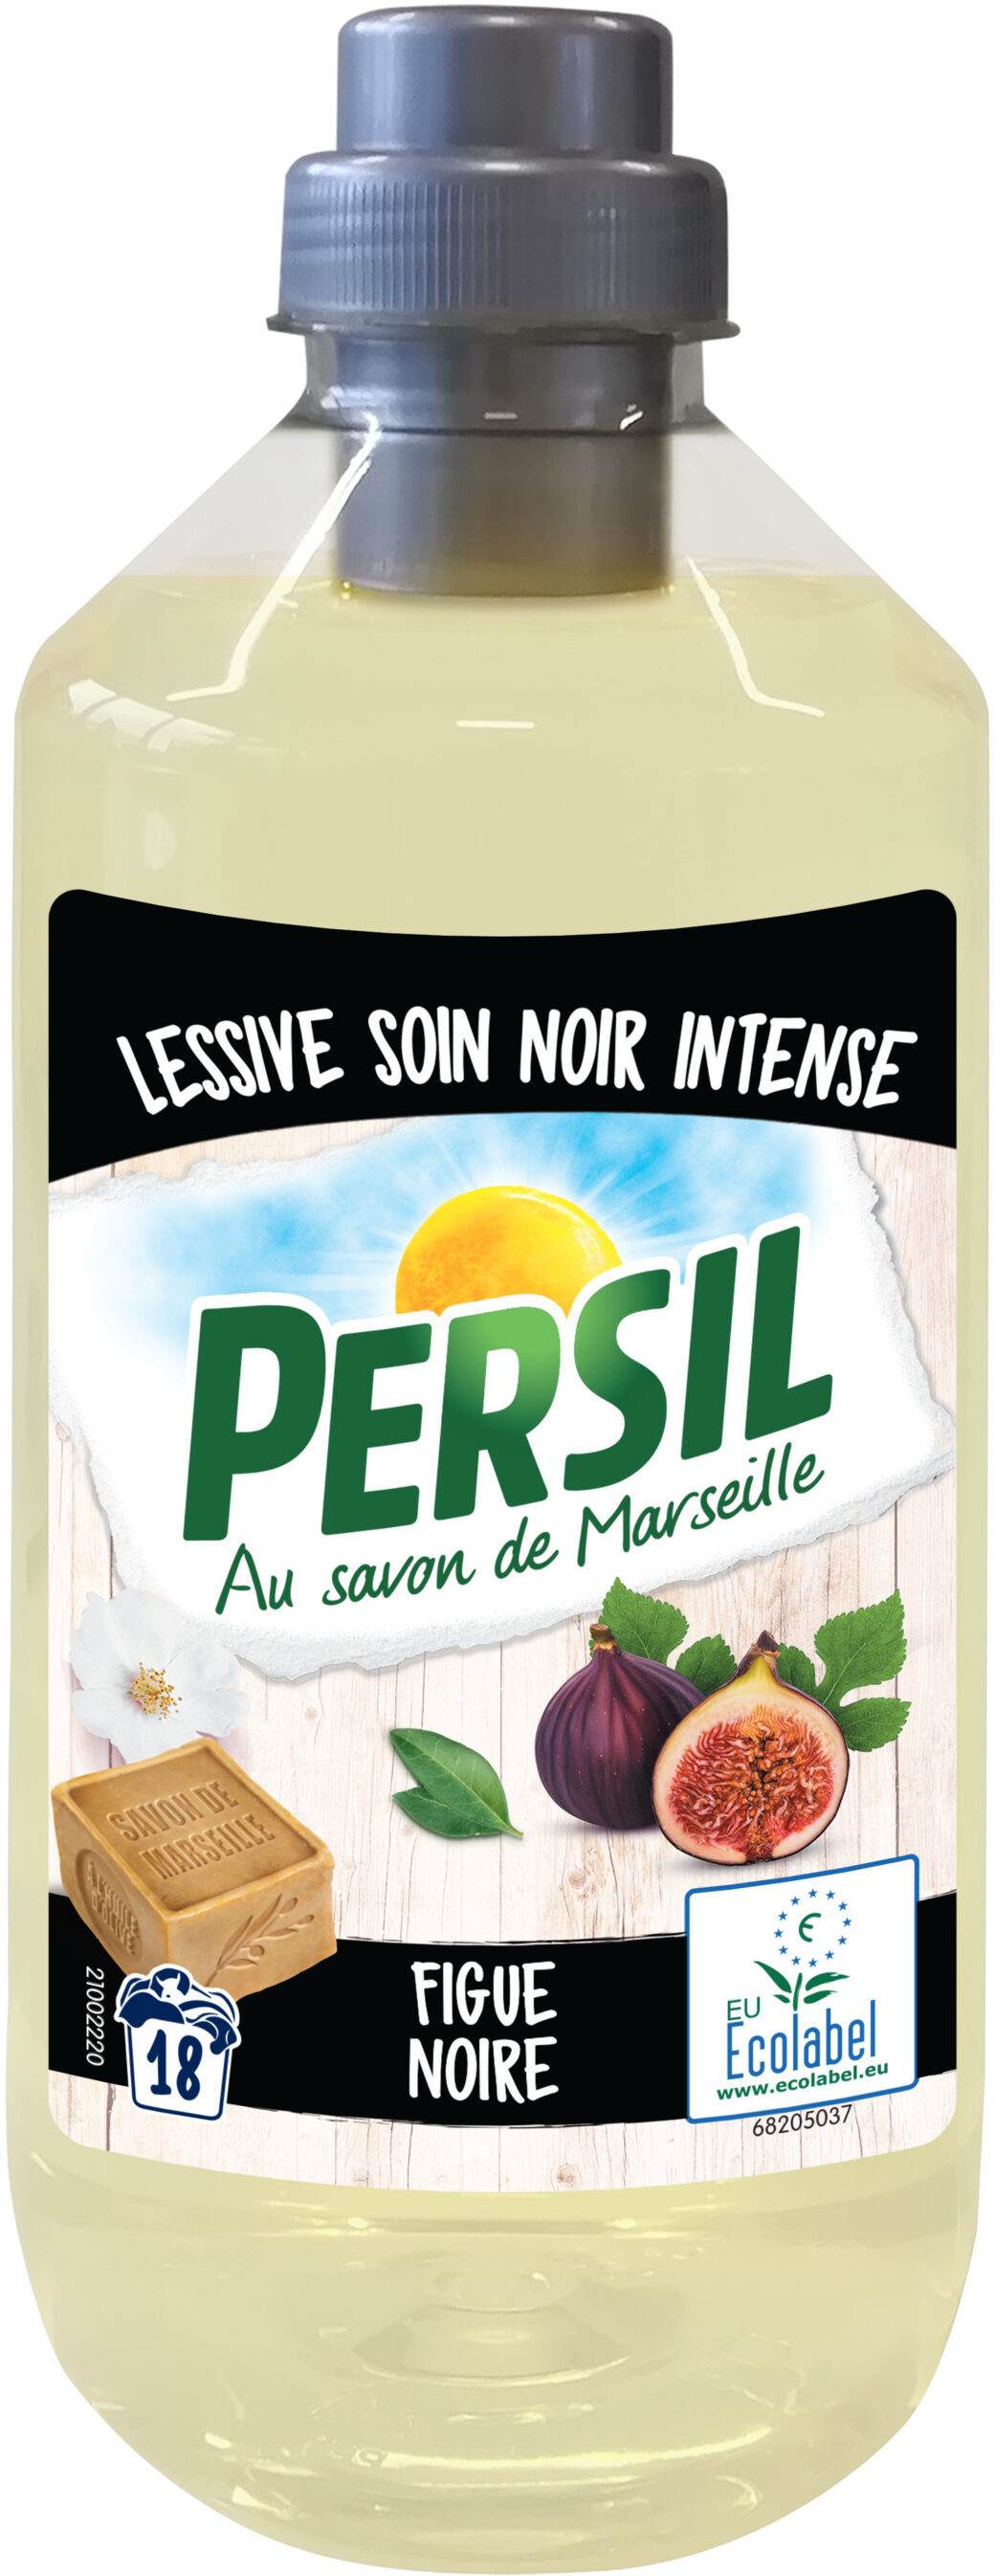 Persil Lessive Liquide Ecolabel Soin Noir Intense Figue Noire 990ml 18 Lavages - Product - fr